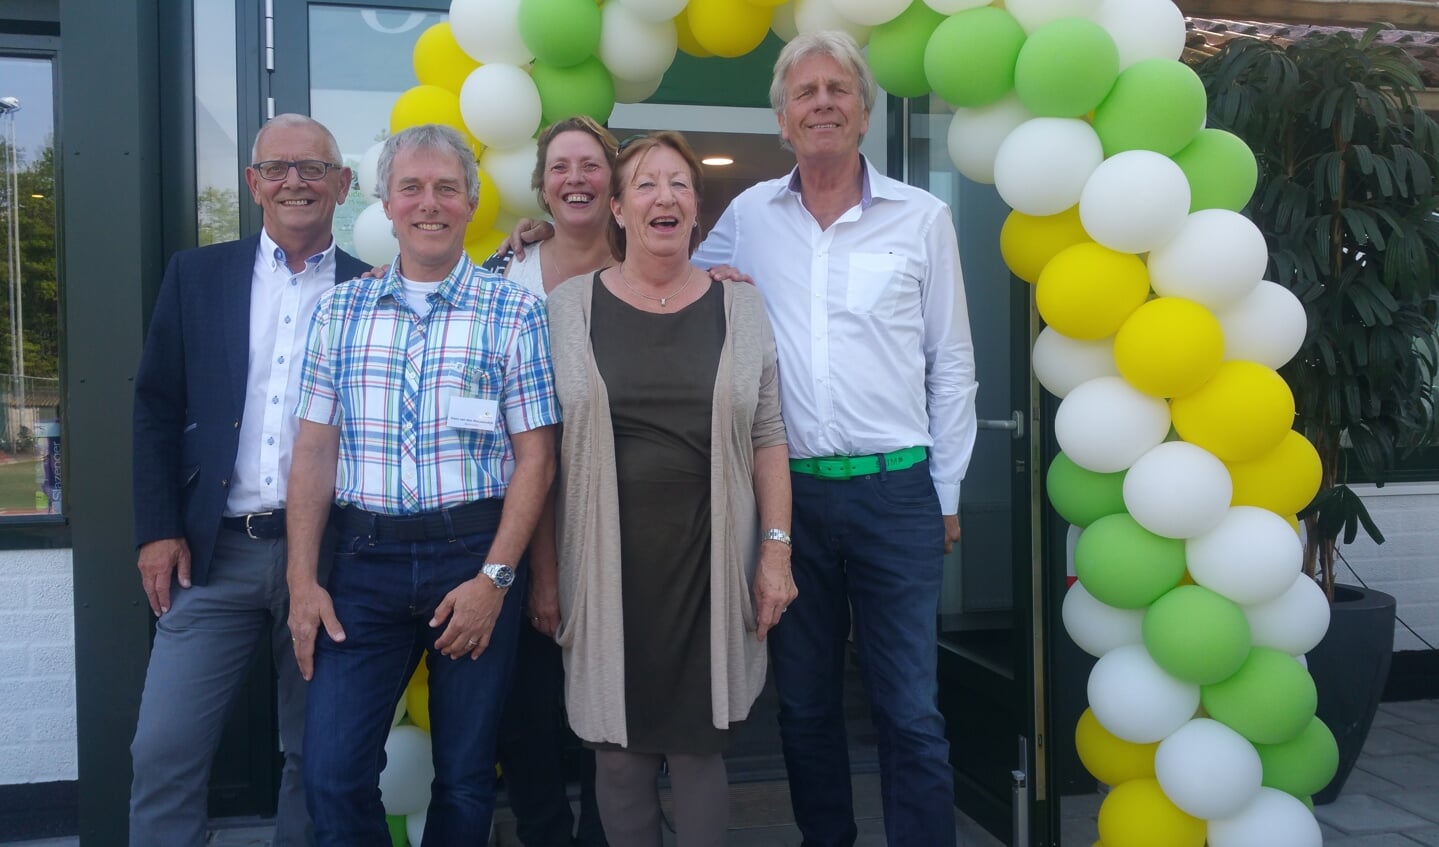 De commissie is blij met het nieuwe clubhuis. V.l.n.r. Nanne Sluymer, Hans v.d. Nieuwendijk, Marijke v.d. Bos, Wil Danes en Nol Sikking. | Foto: pr.